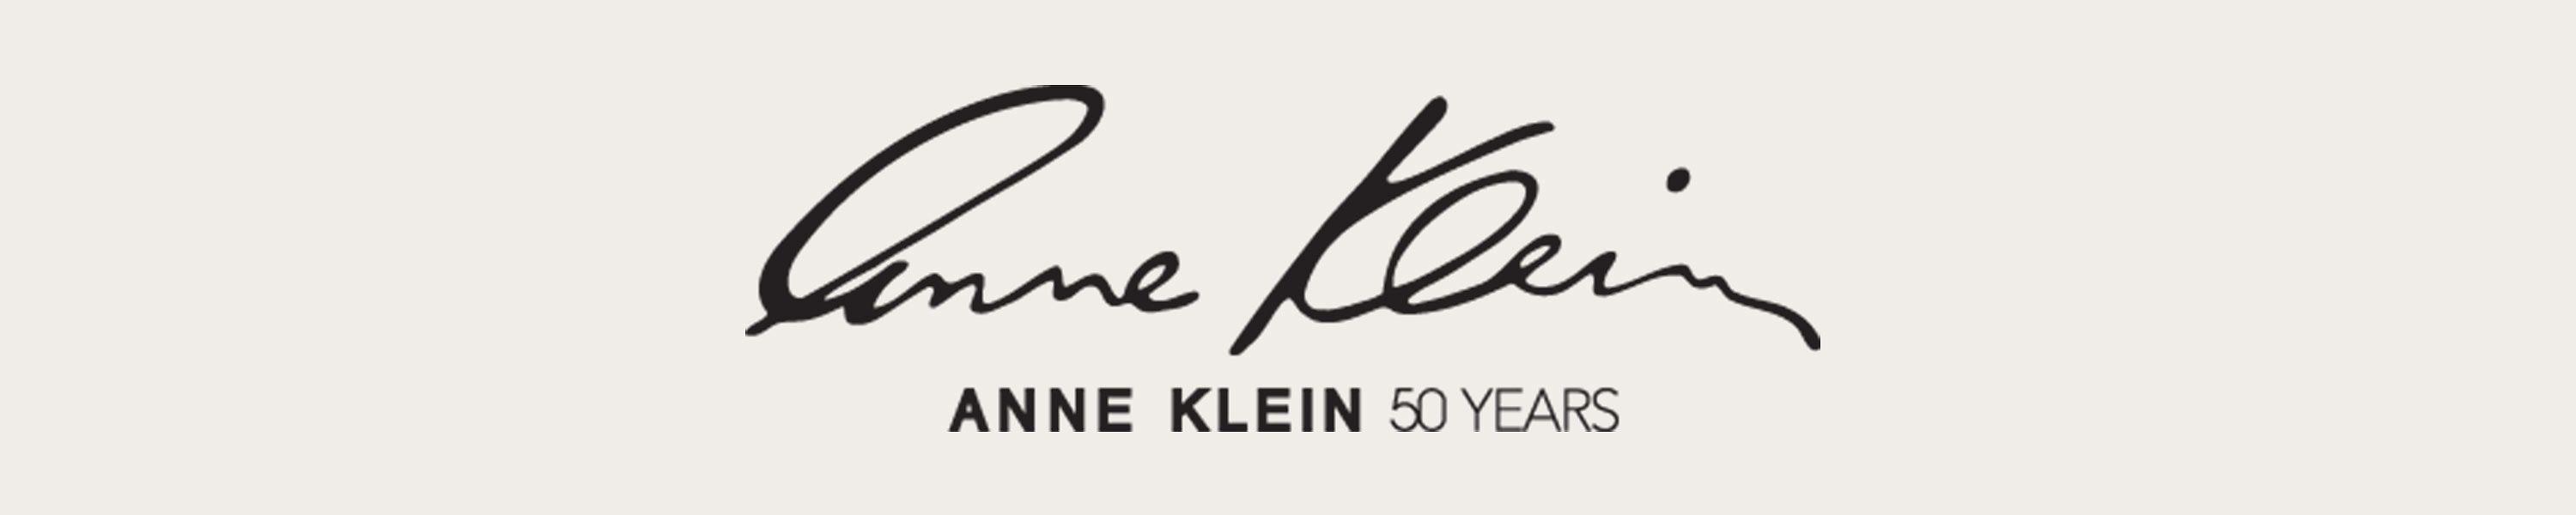 Anne Klein Logo - Amazon.com: Anne Klein